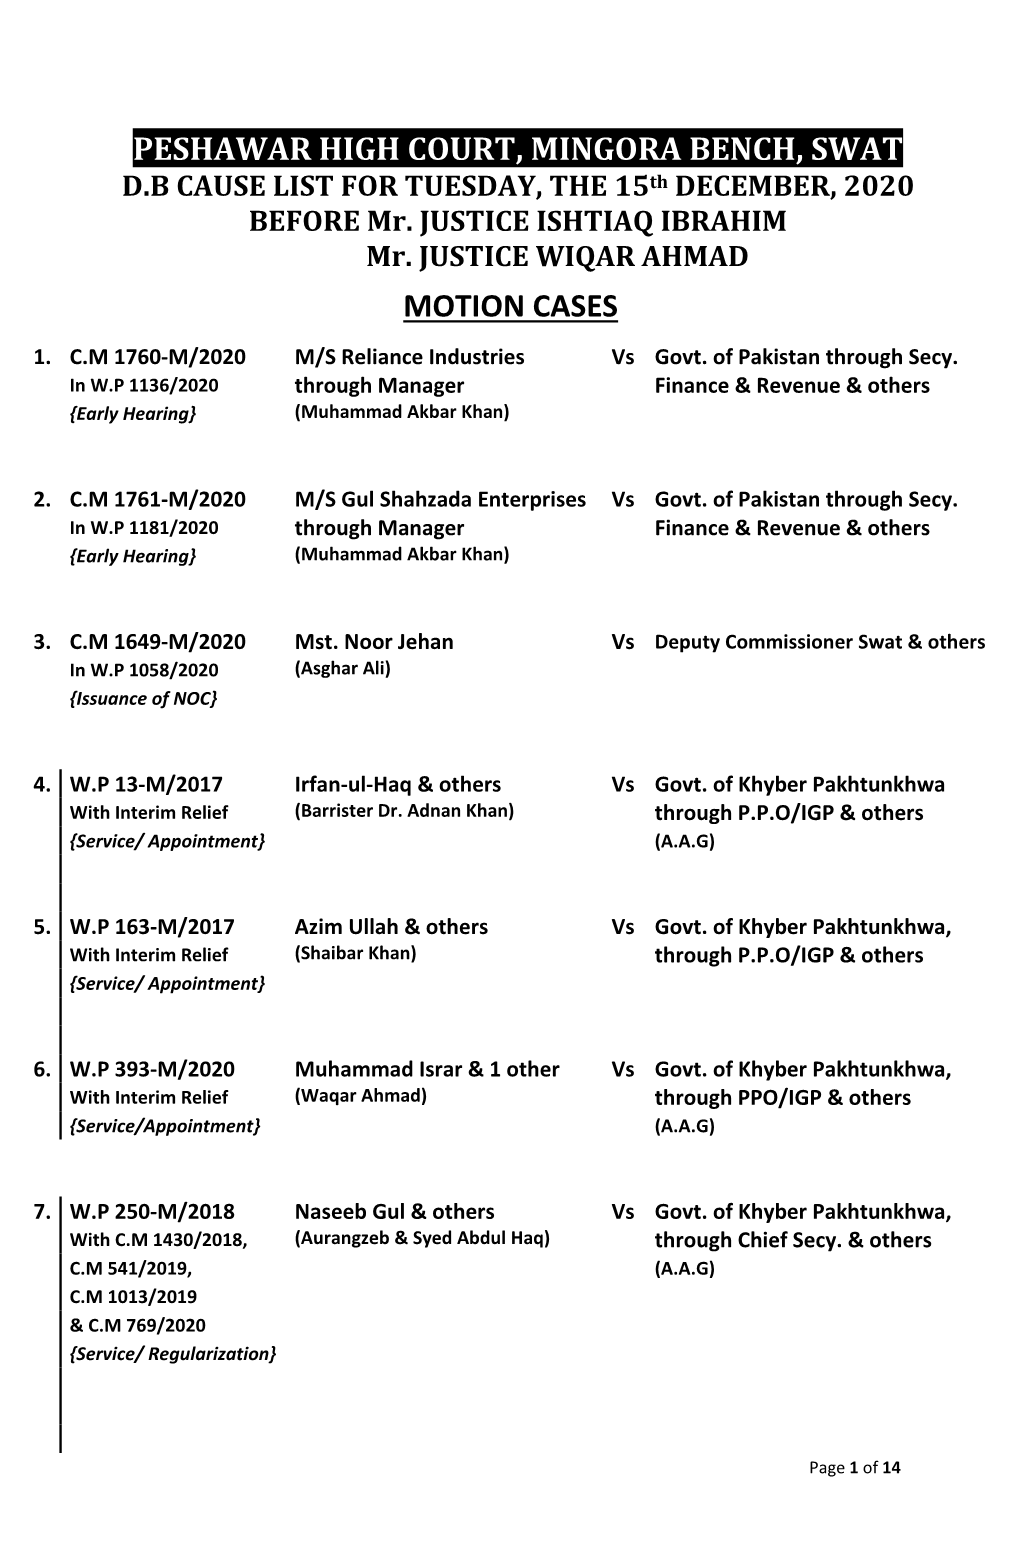 Peshawar High Court, Mingora Bench, Swat Motion